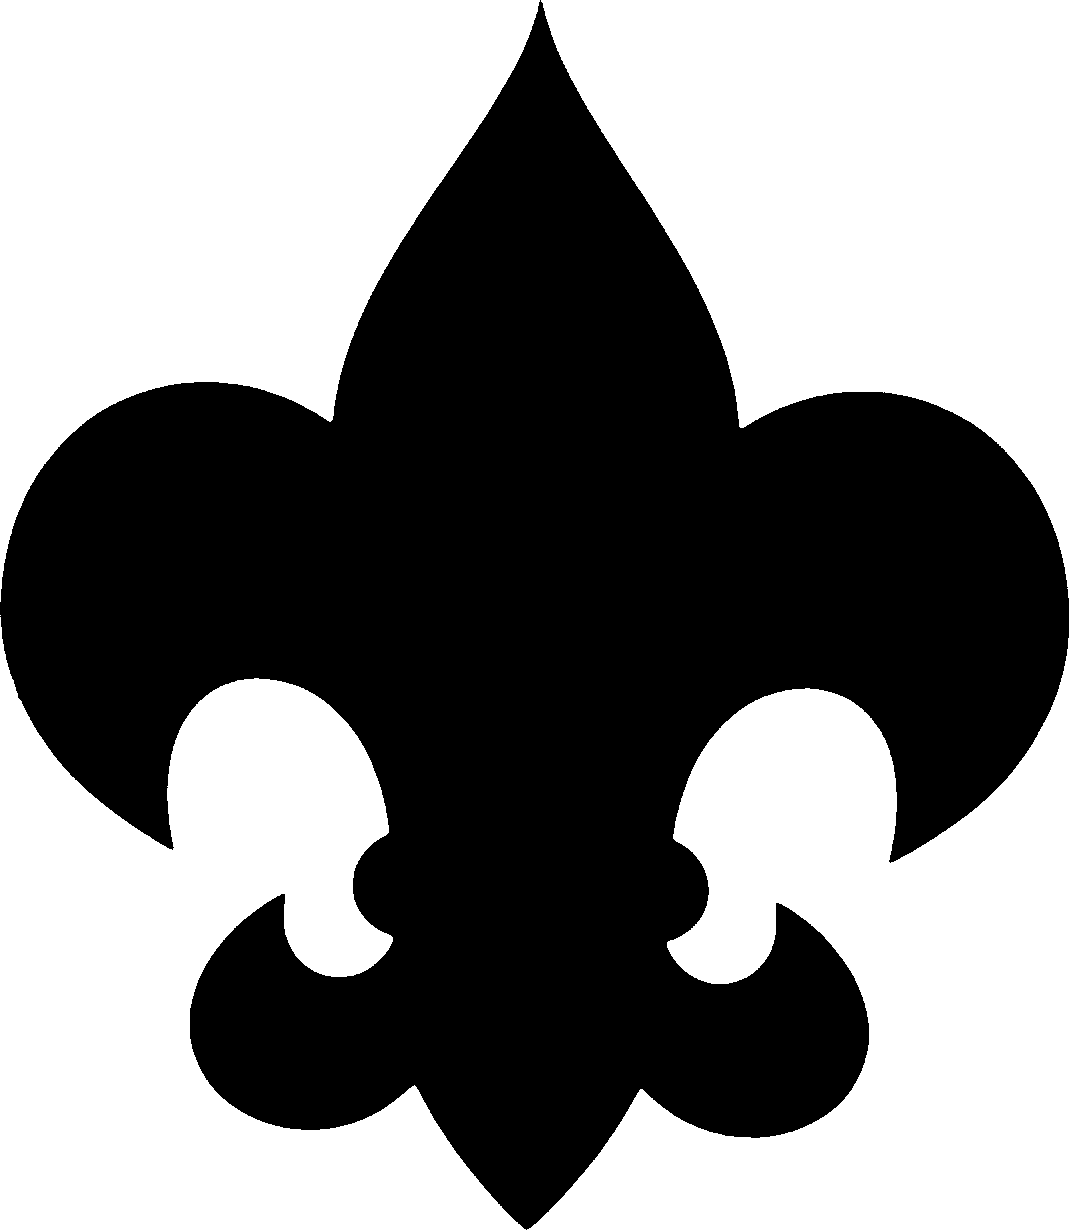 Boy Scout Symbol Png Image Clipart